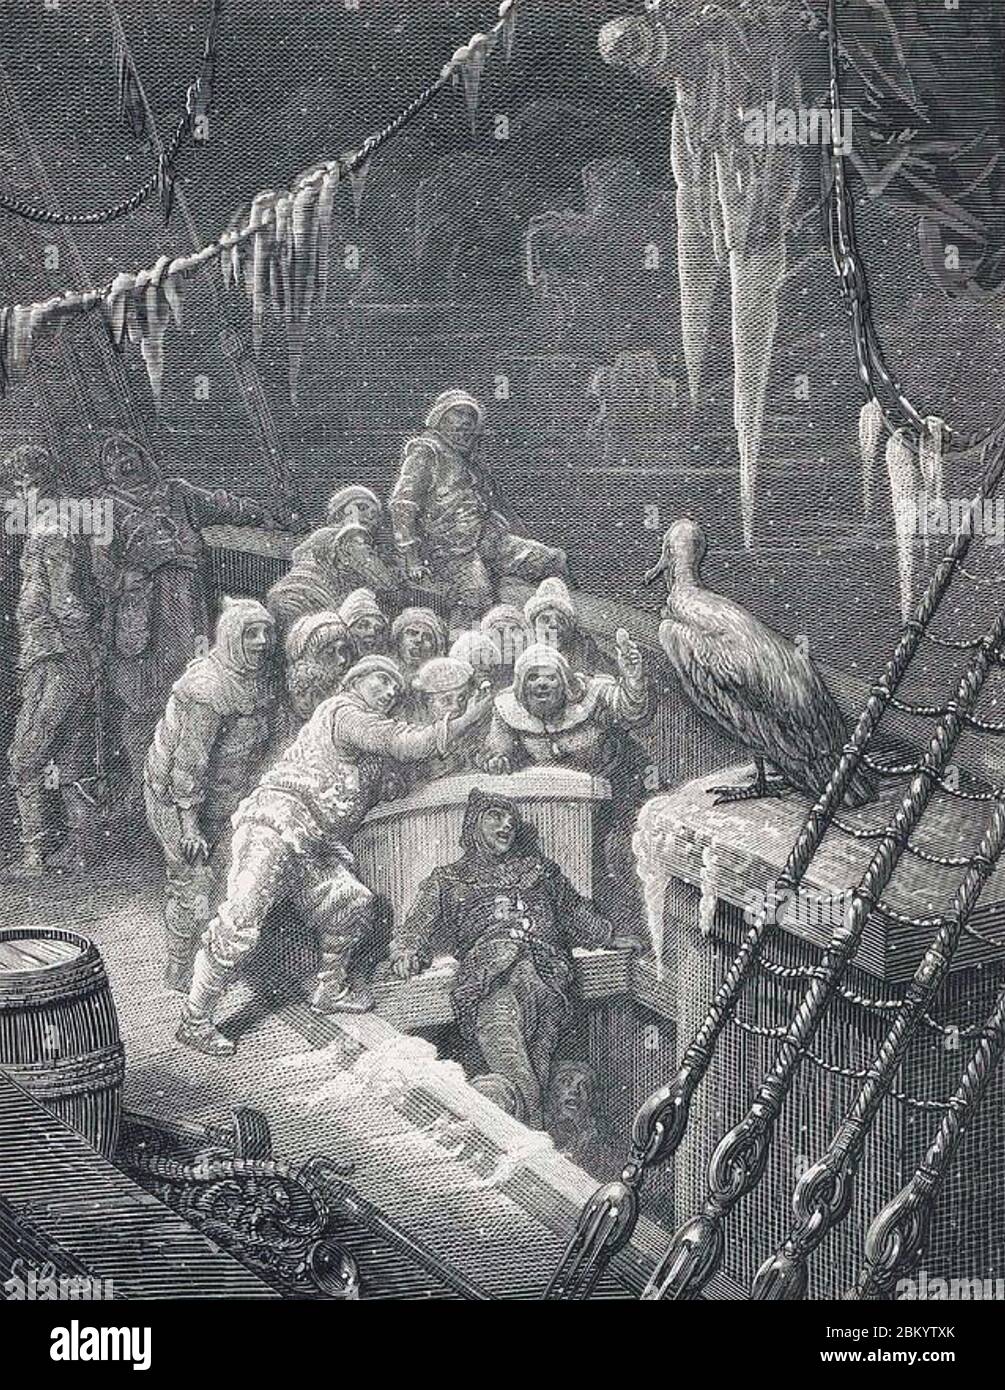 DER RIM DES ANTIKEN MARINERS von Samuel Taylor Coleridge, 1798. Die Crew beobachtet nervös die Albatros. Stockfoto